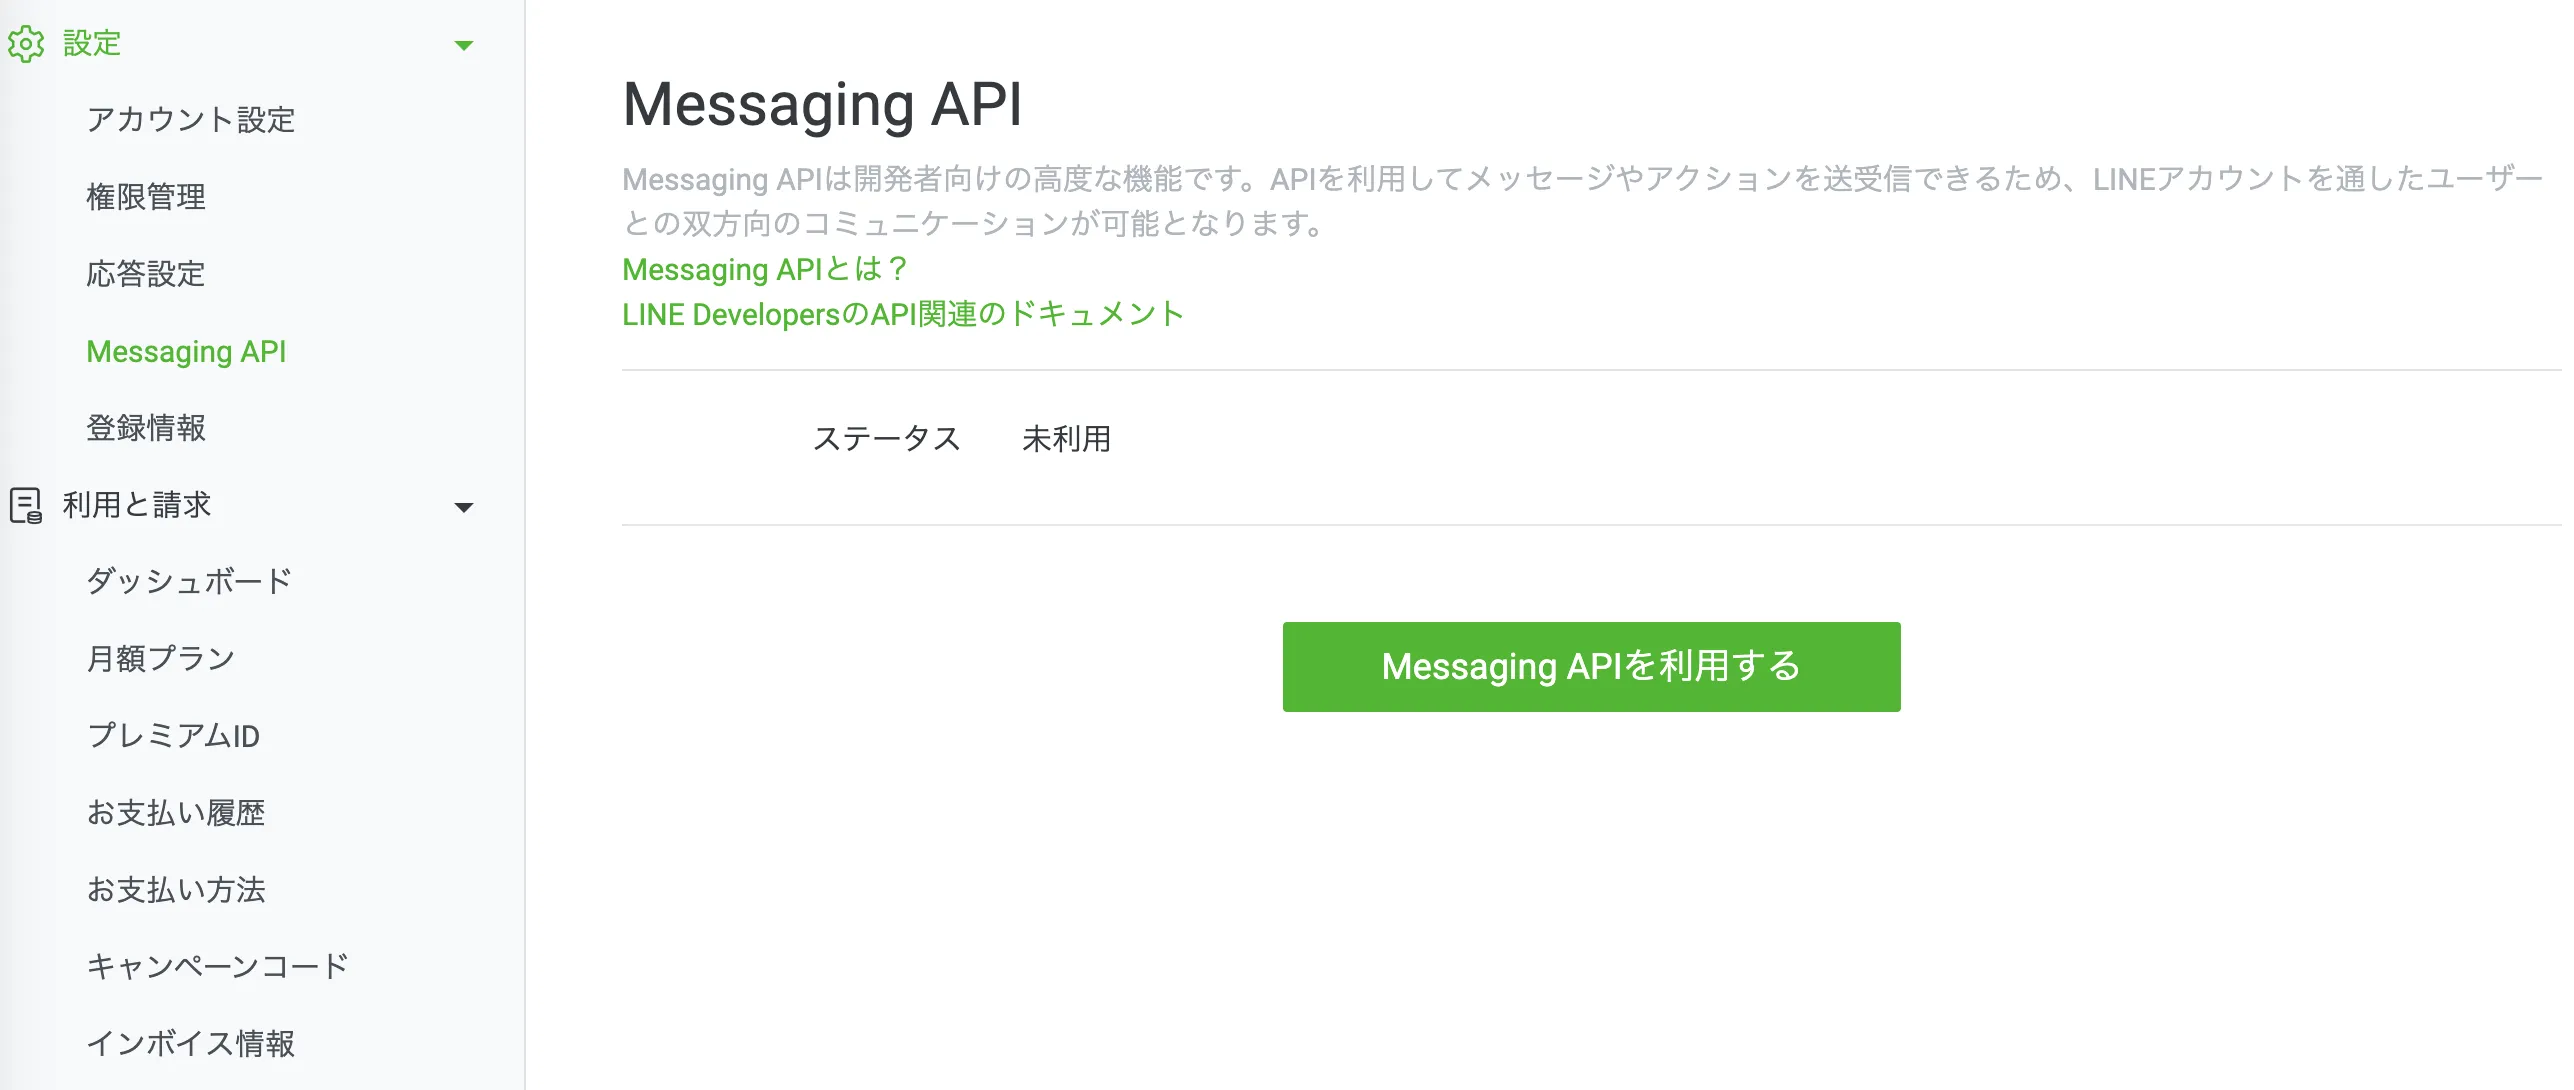 Messaging APIは以下の画面から取得することができます